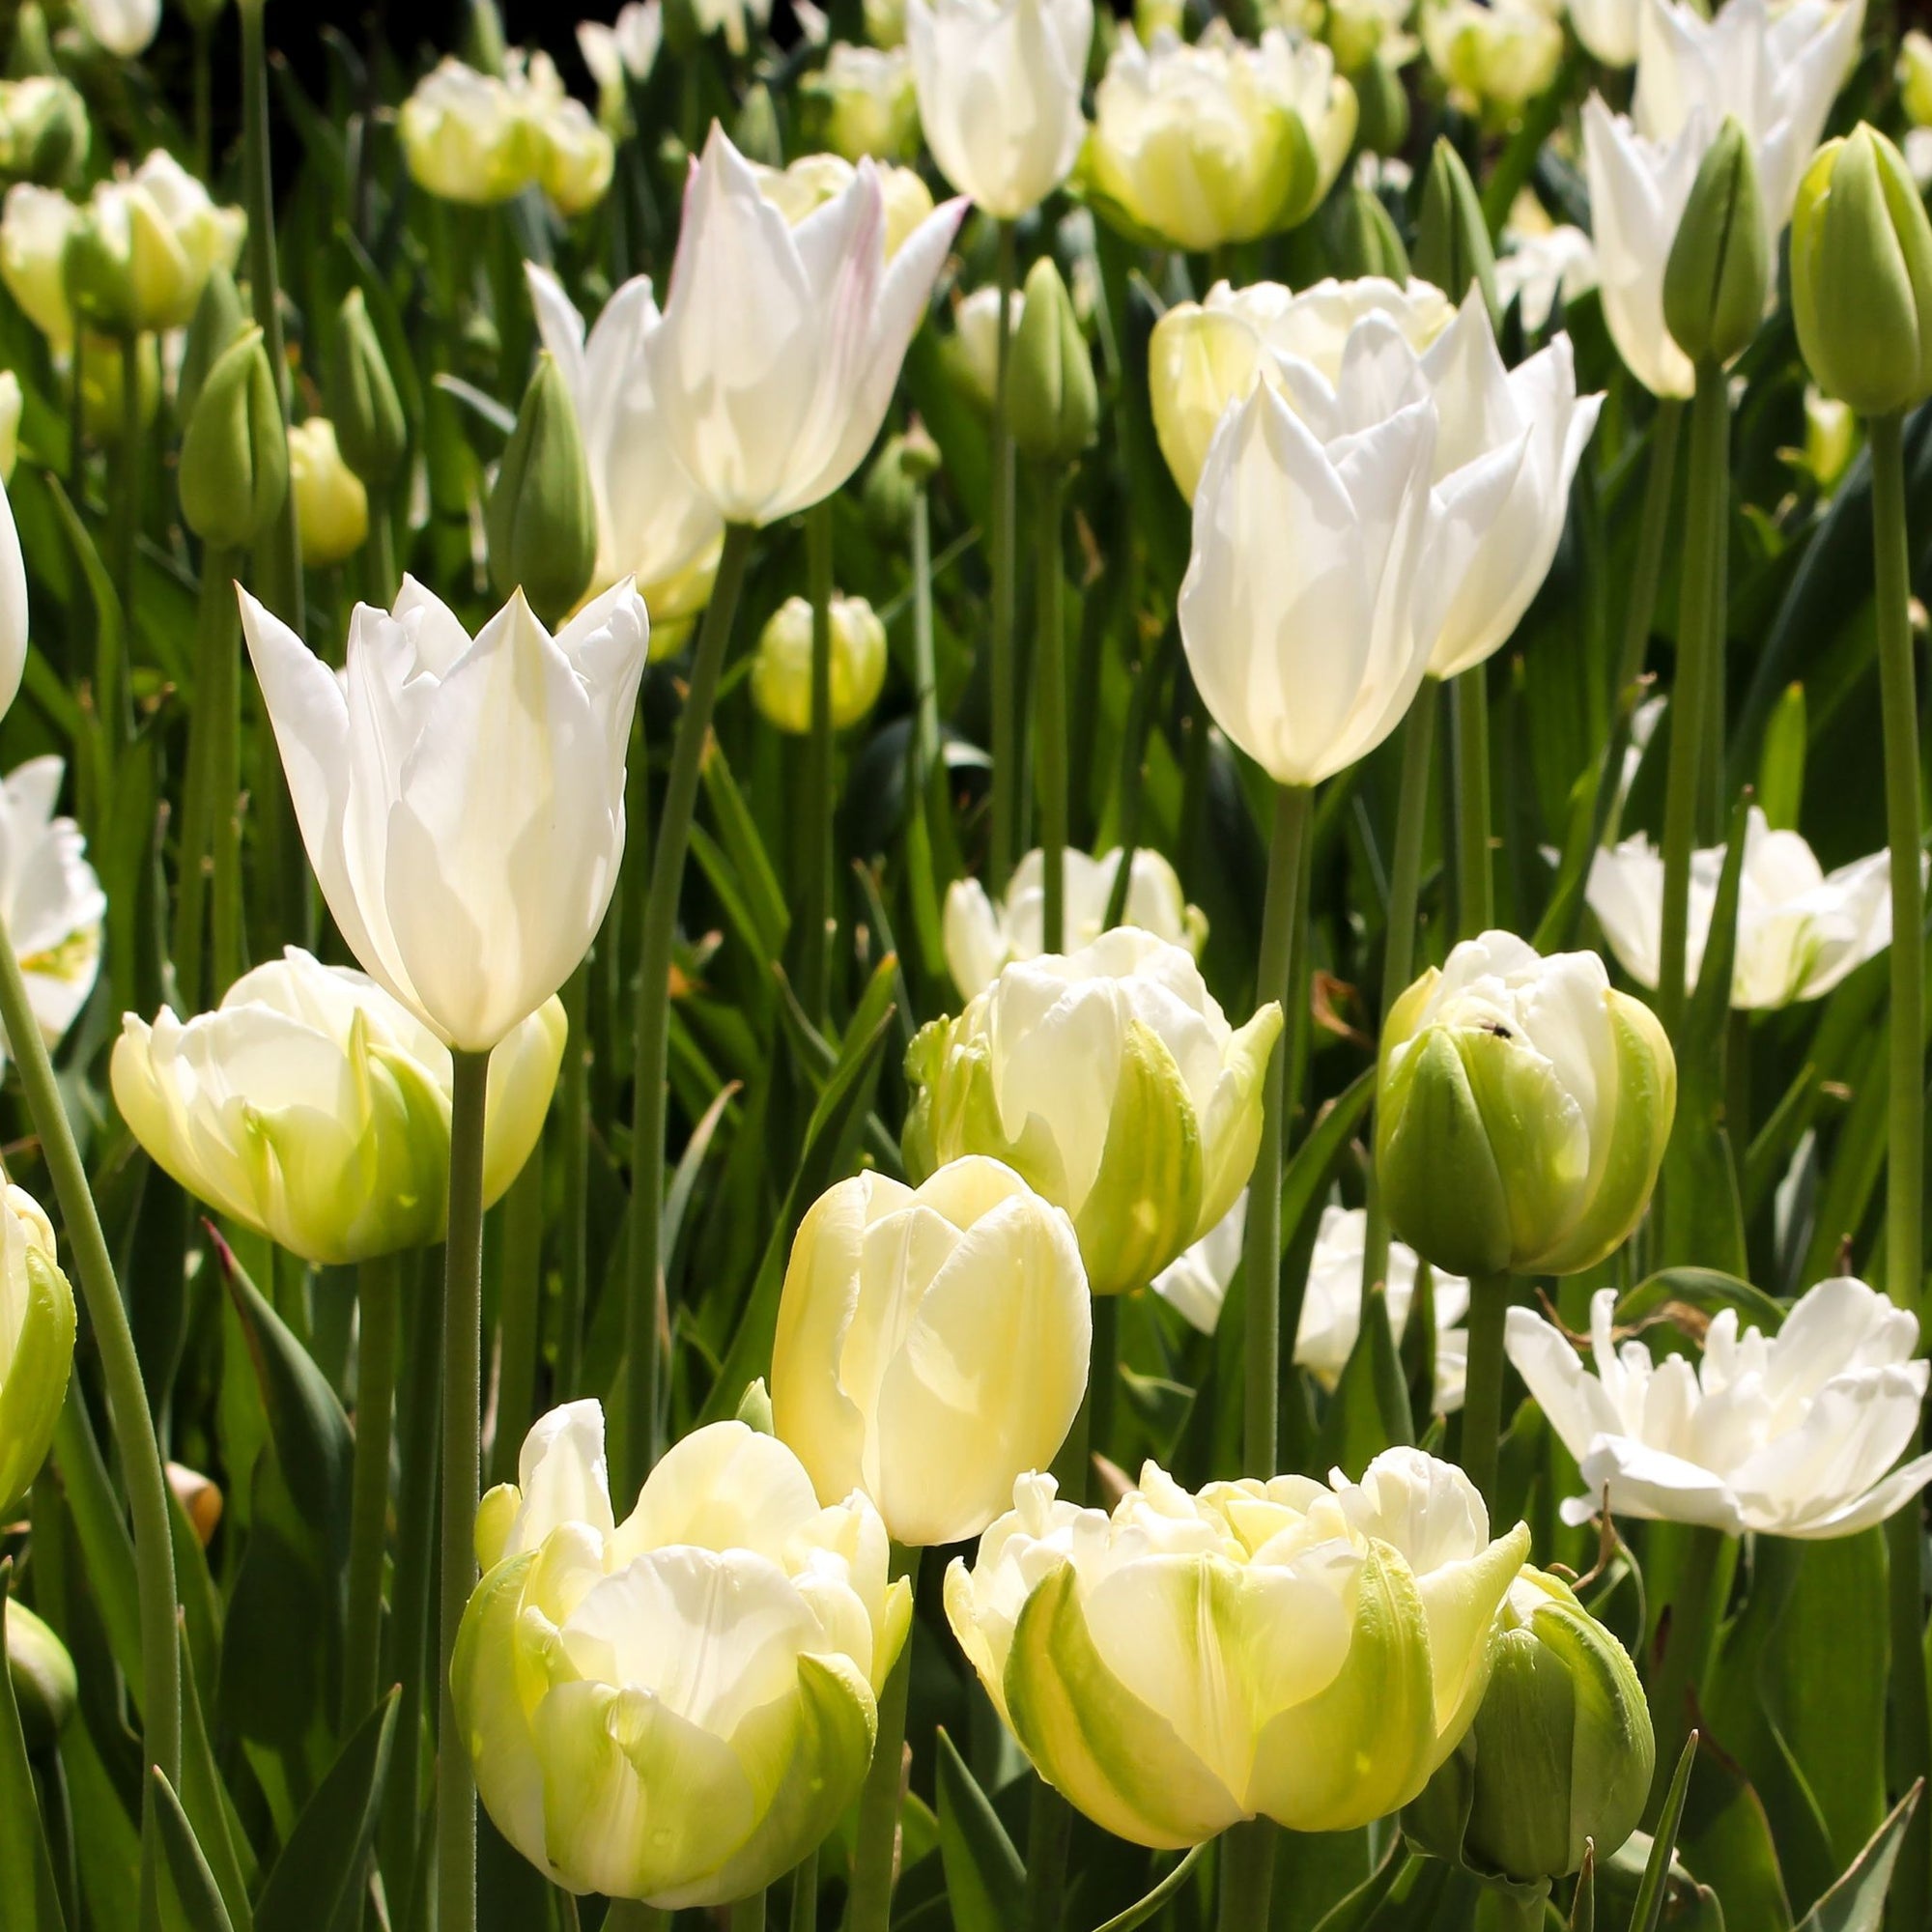 Tulip 'Purissima' (6 Bulbs)